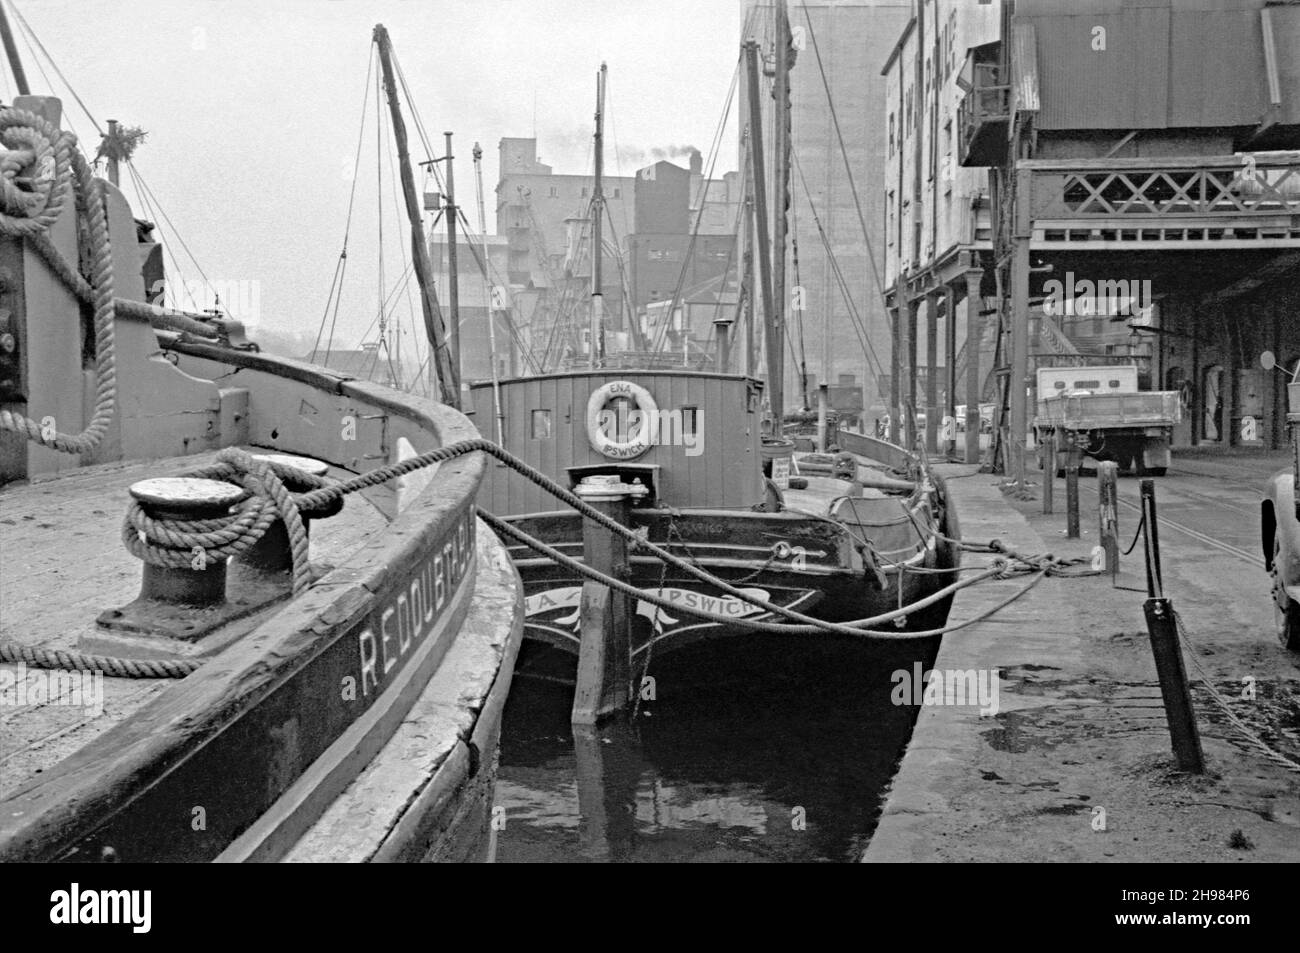 El muelle húmedo en el puerto de Ipswich, Suffolk, Inglaterra, Reino Unido  fotografiado en sus últimos días de tráfico comercial a mediados de 1960s.  Aquí se siguen utilizando barcazas de navegación del